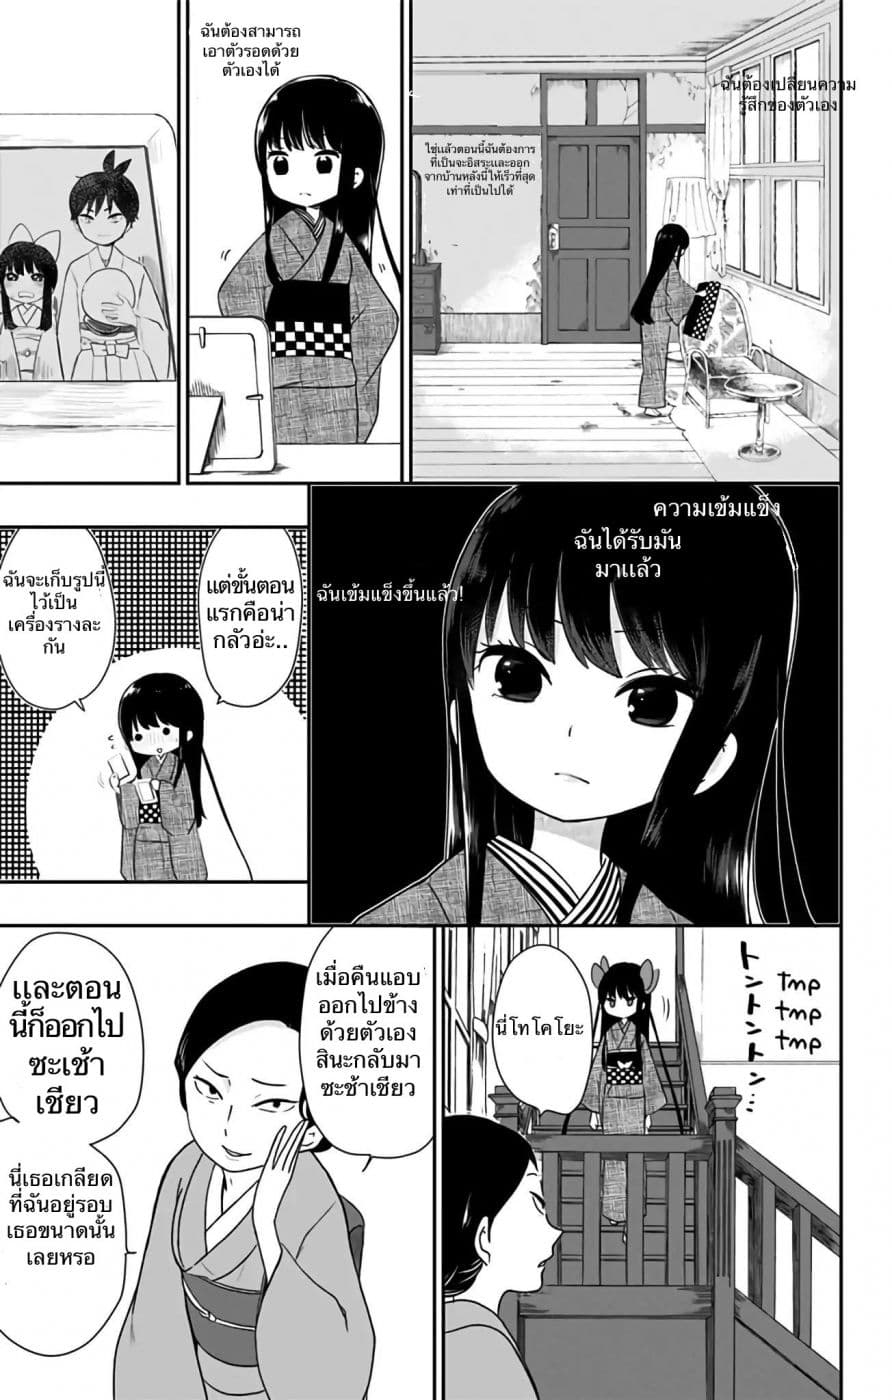 Shouwa Otome Otogibanashi เรื่องเล่าของสาวน้อย ยุคโชวะ ตอนที่ 4 (5)